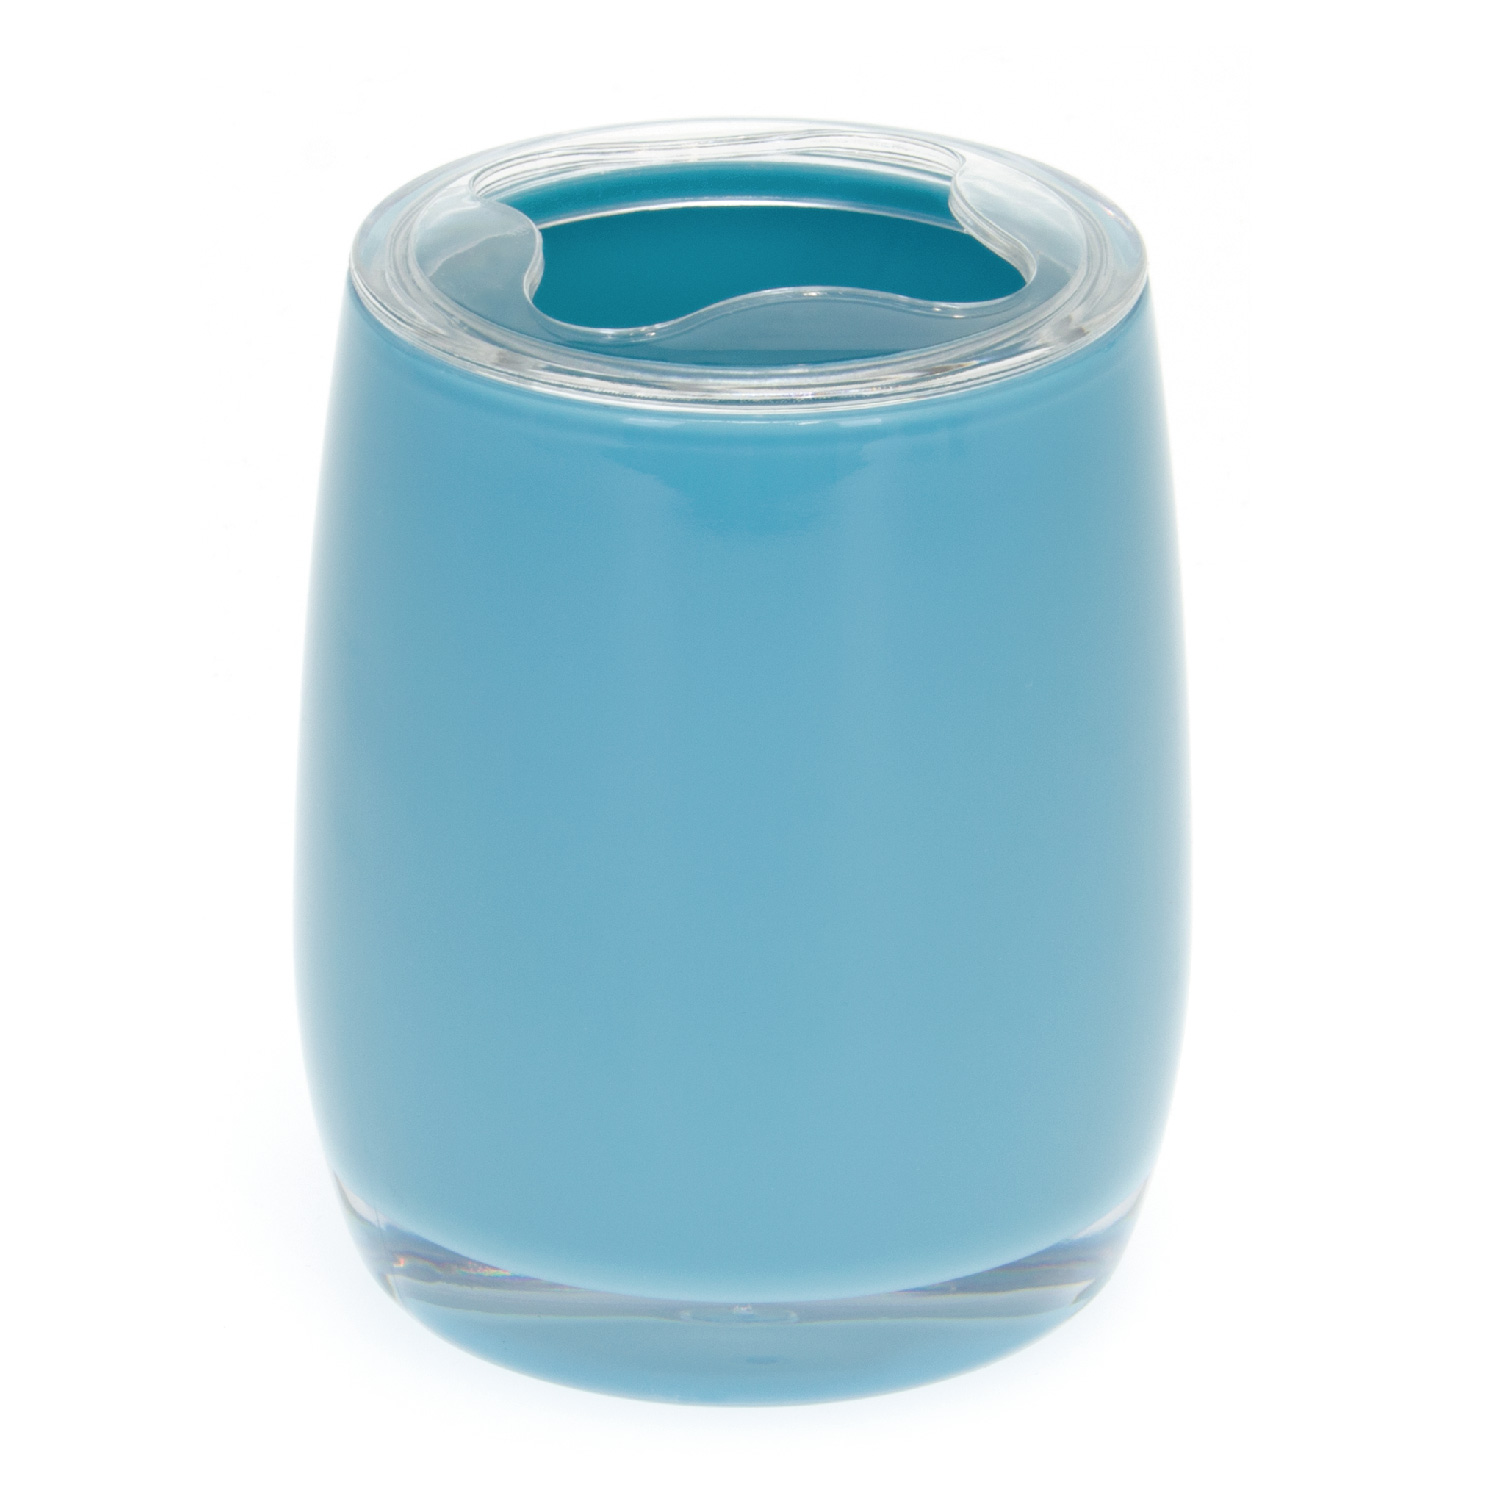 Bad-Serie SAVONA Zahnbürstenbehälter aus Kunststoff, blau